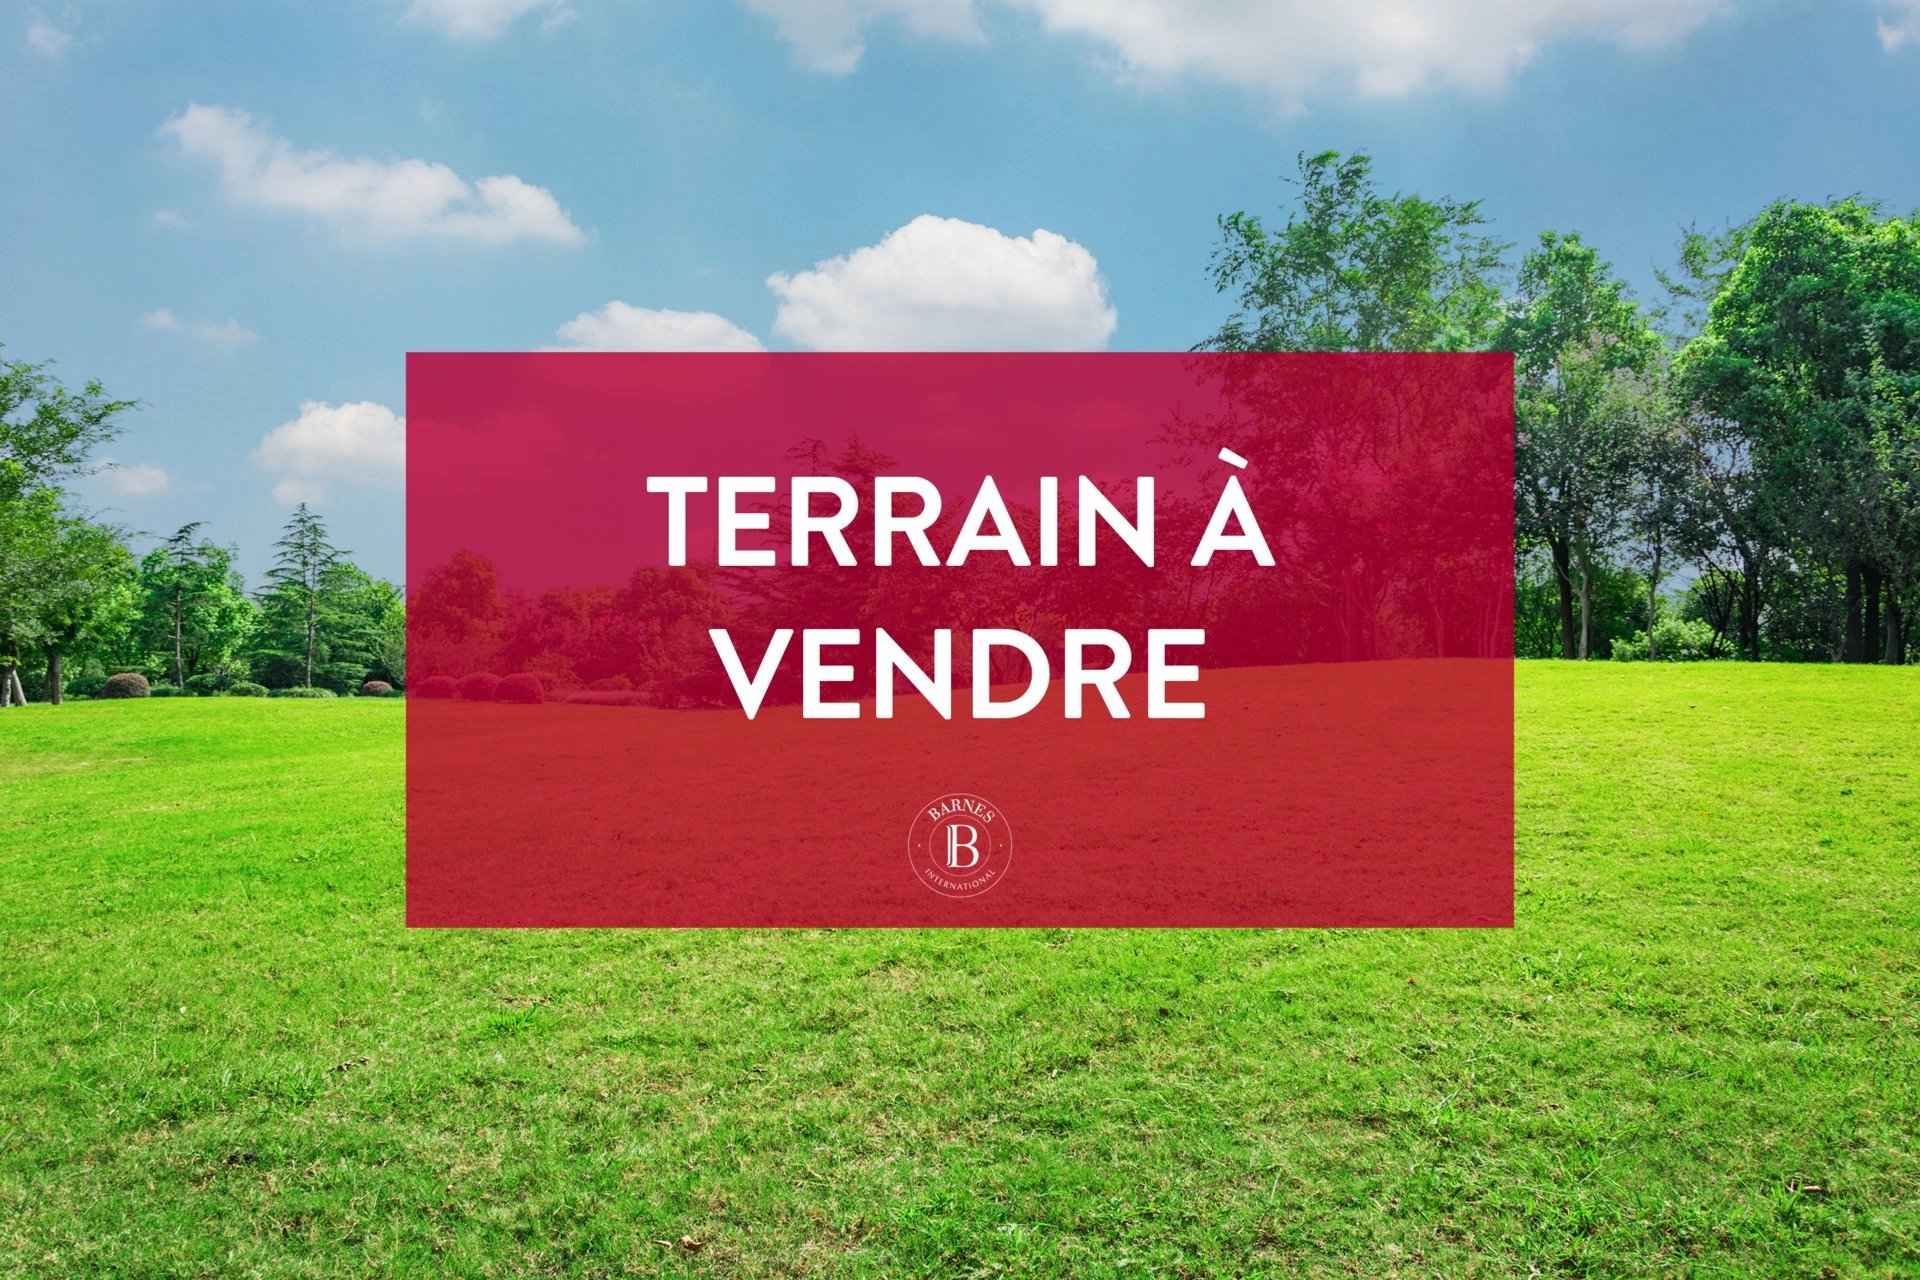 Terrain - Barnes Évian, agence immobilière de prestige